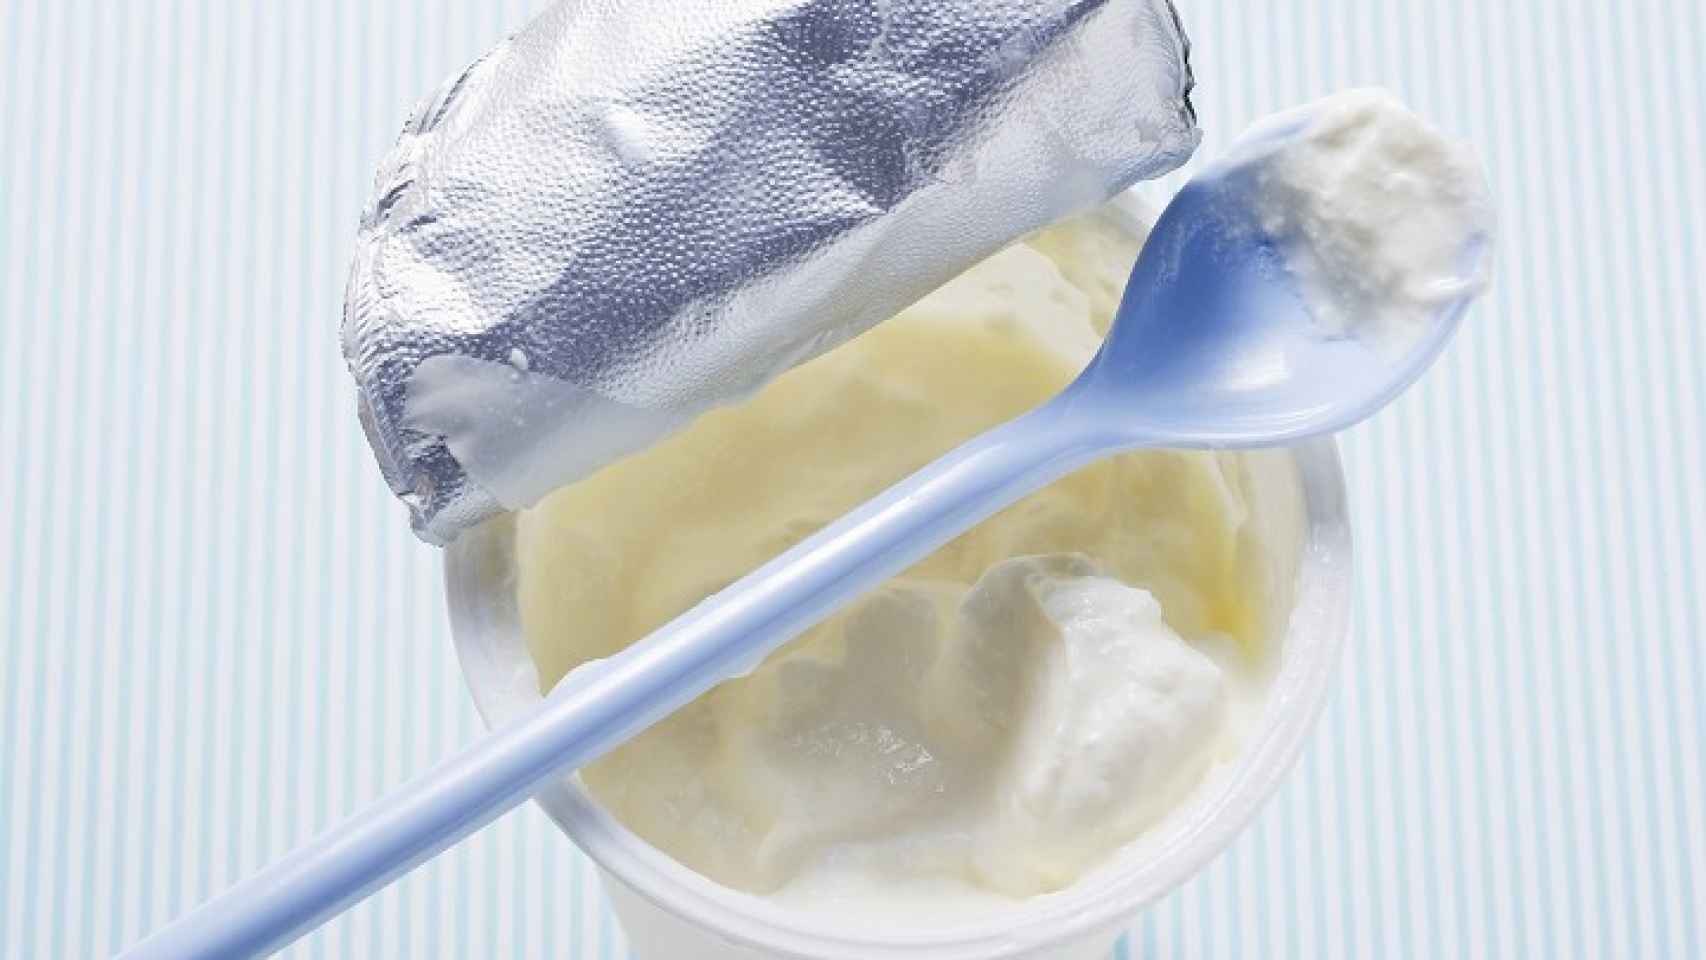 La 'mentira' de los 'petit suisse', el falso yogur que en realidad